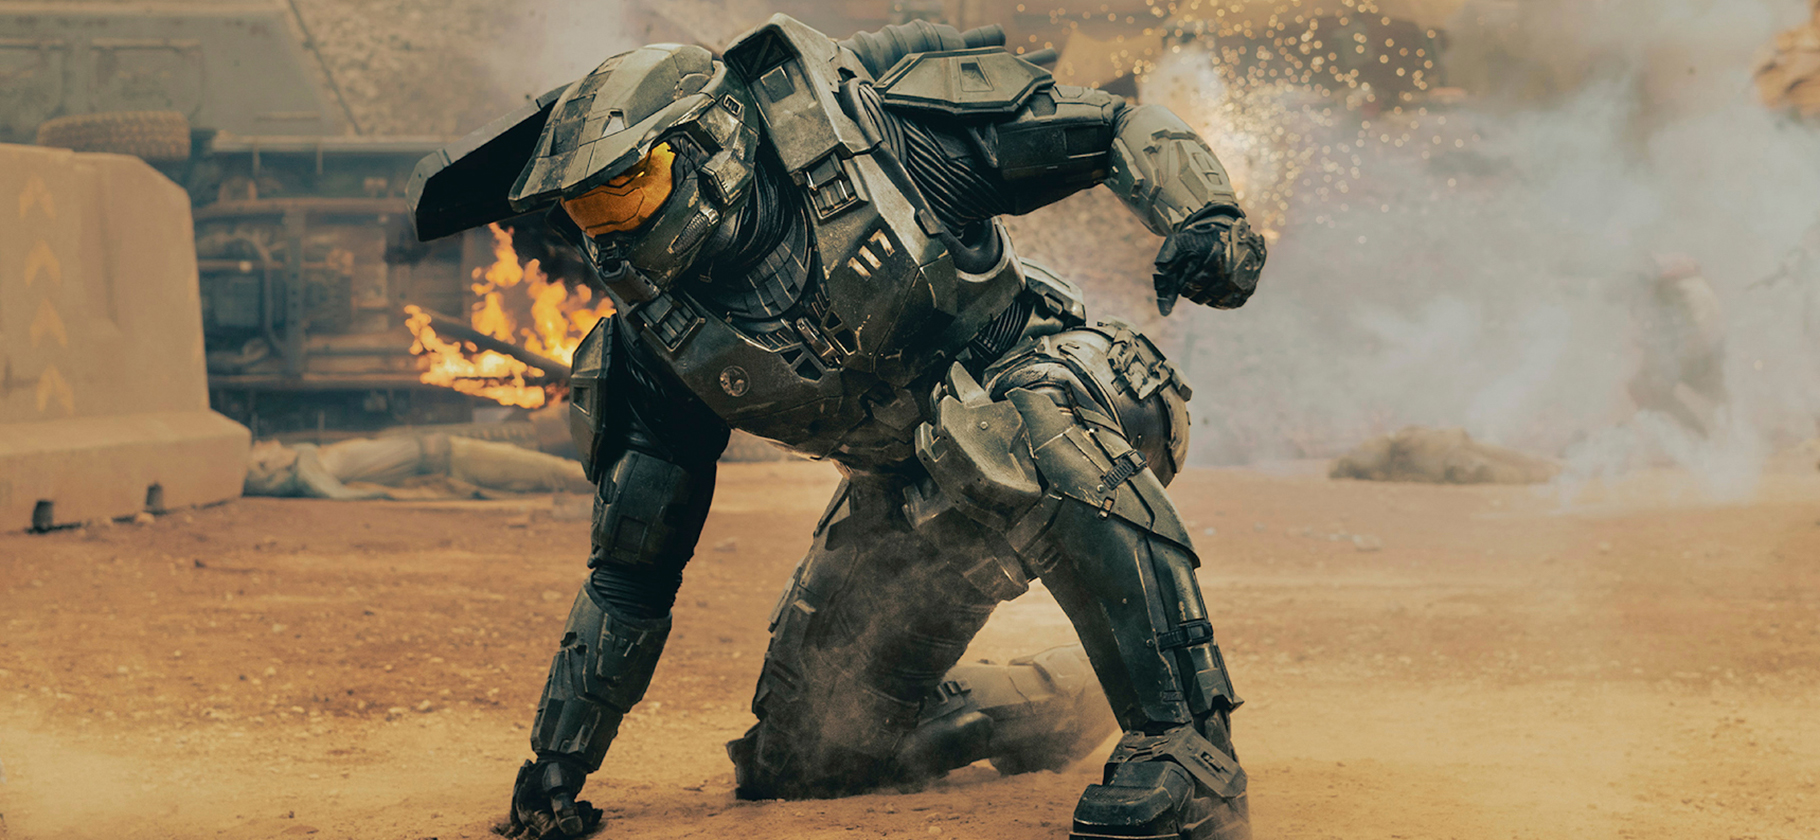 Сериал по Halo — новый «Мандалорец»? Похож ли на игры? Отвечаем на главные вопросы зрителей